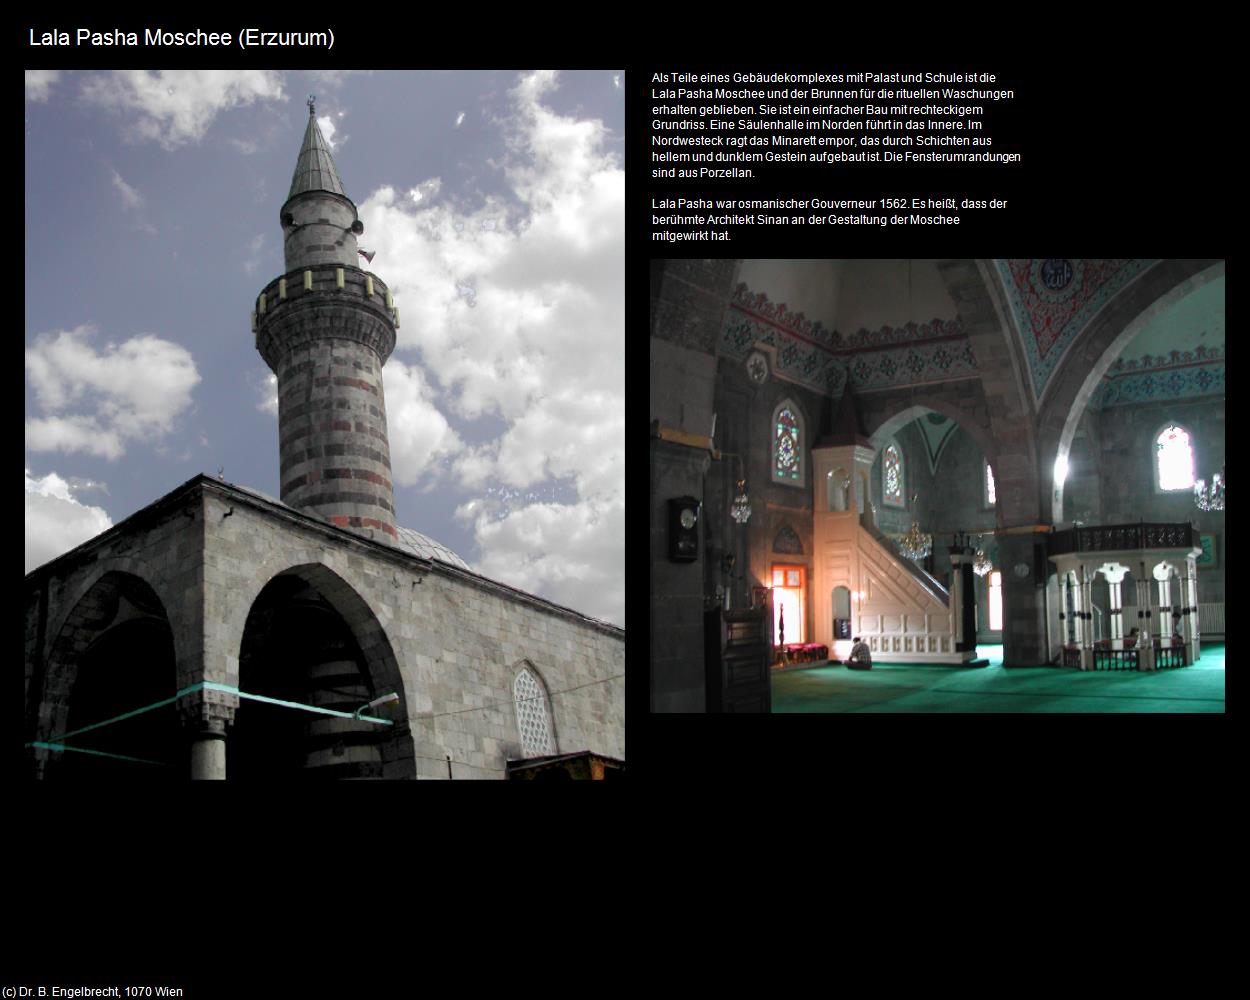 Lala Pasha Moschee (Erzurum) in TÜRKEI